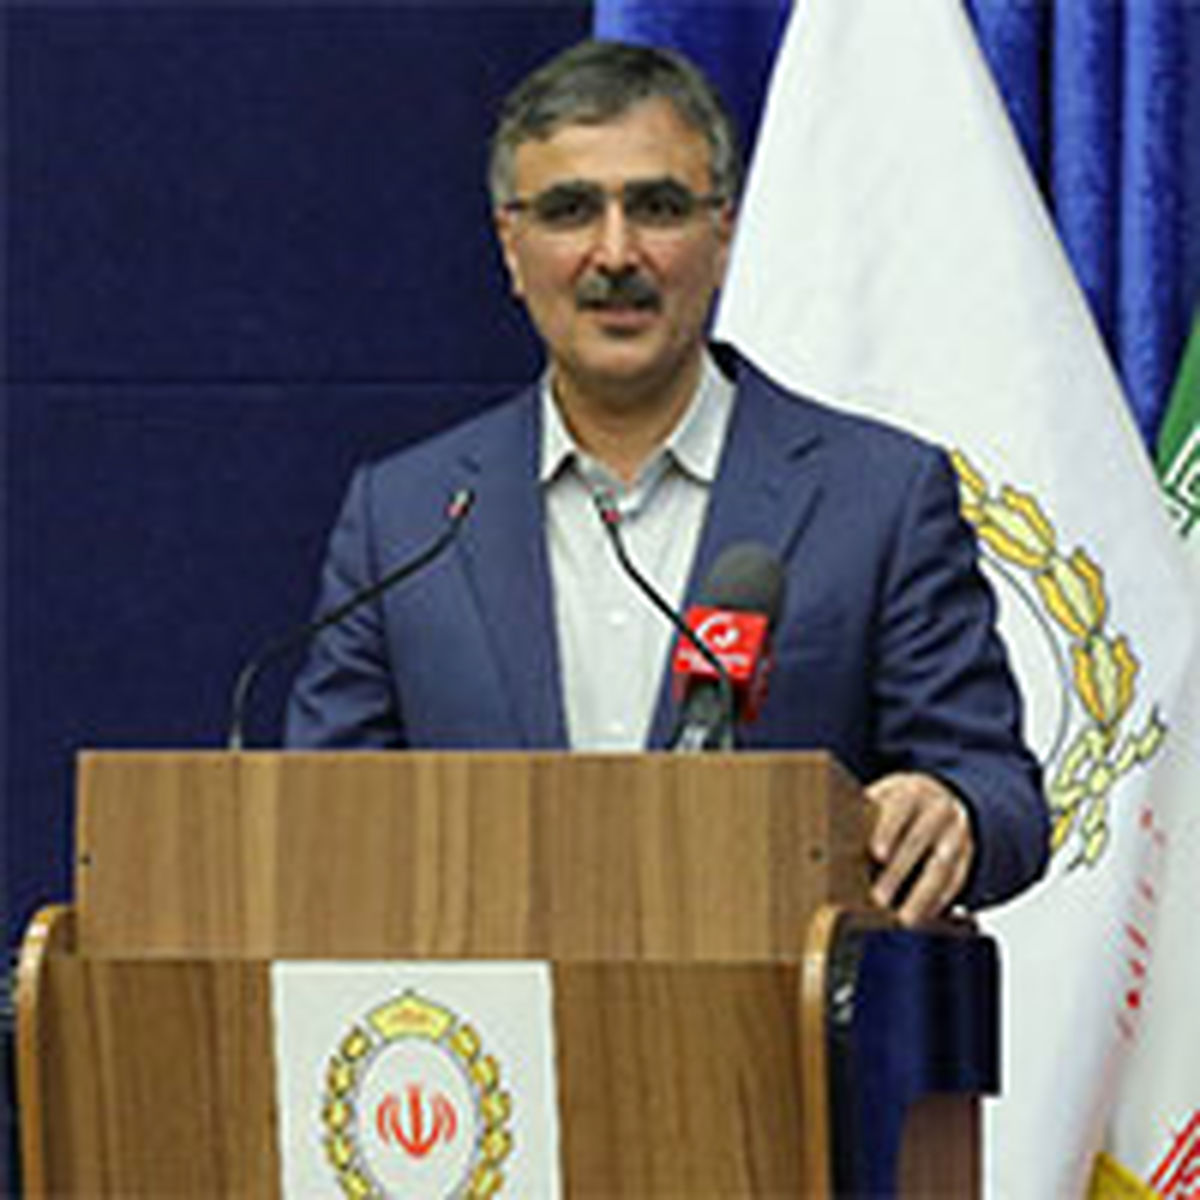 ماشین تولید زیاندهی بانک ملی ایران باید متوقف شود